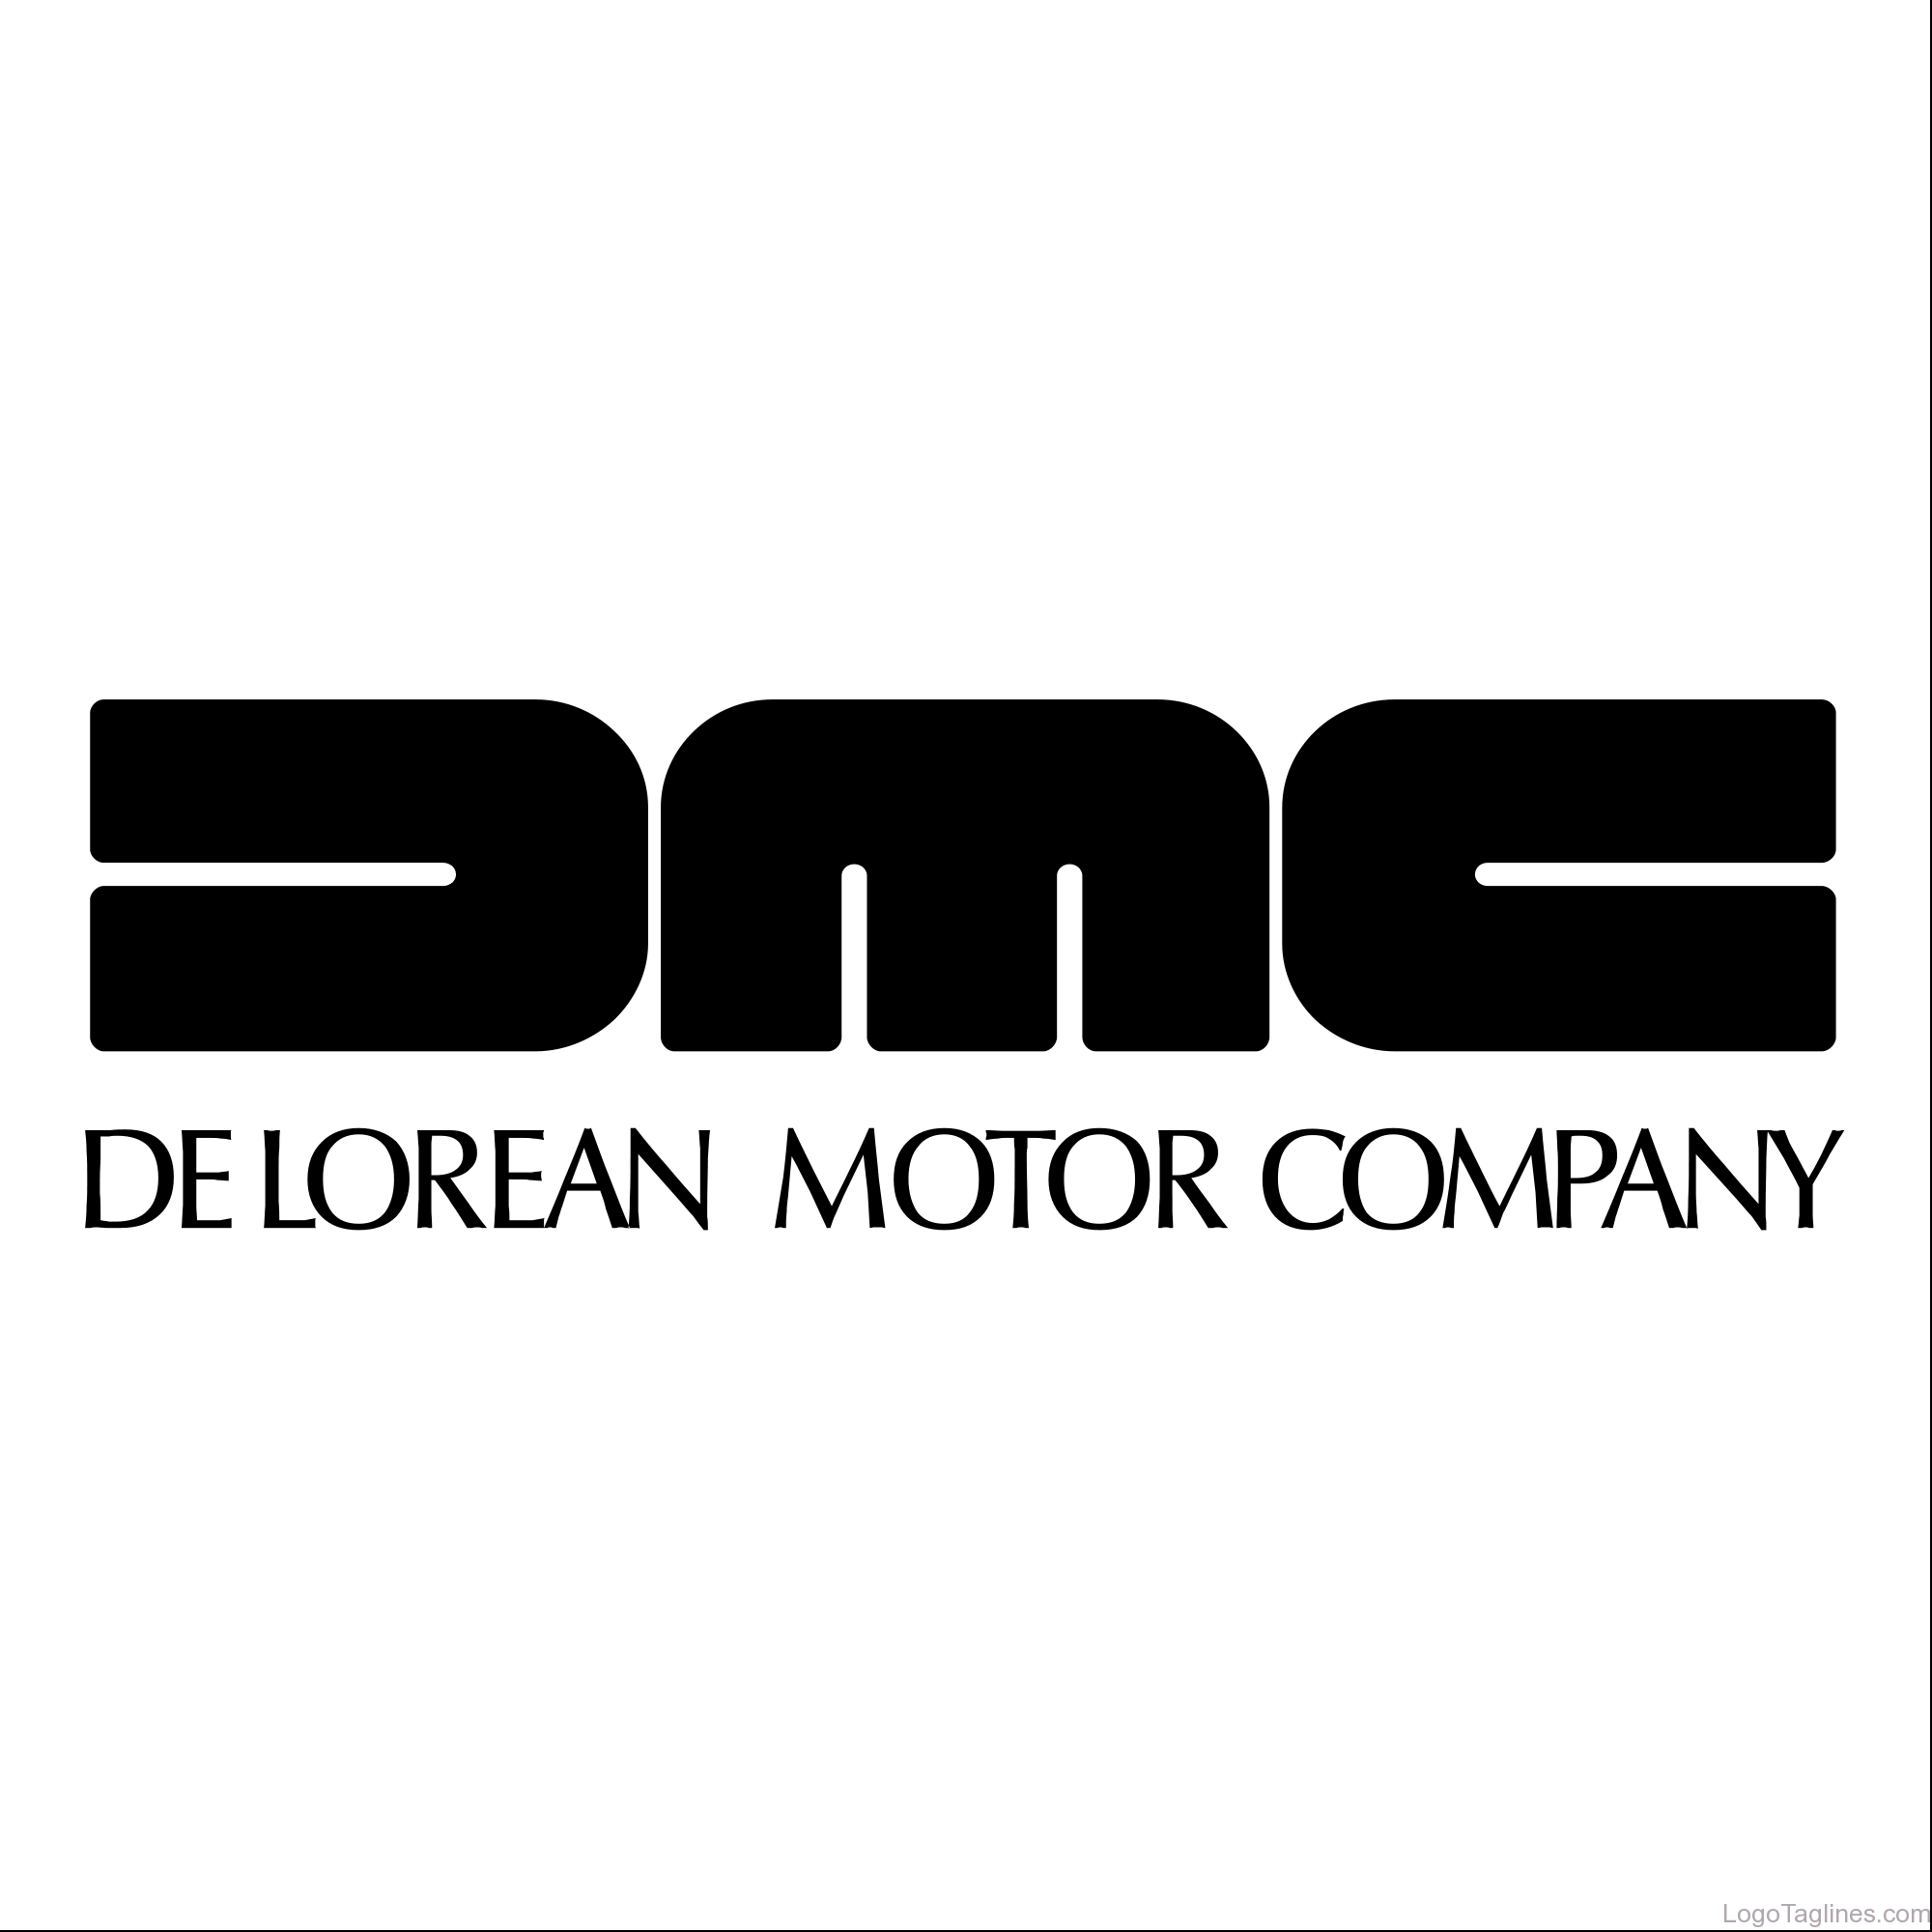 DMC Logo - The DeLorean Motor Company- DMC Logo and Tagline -